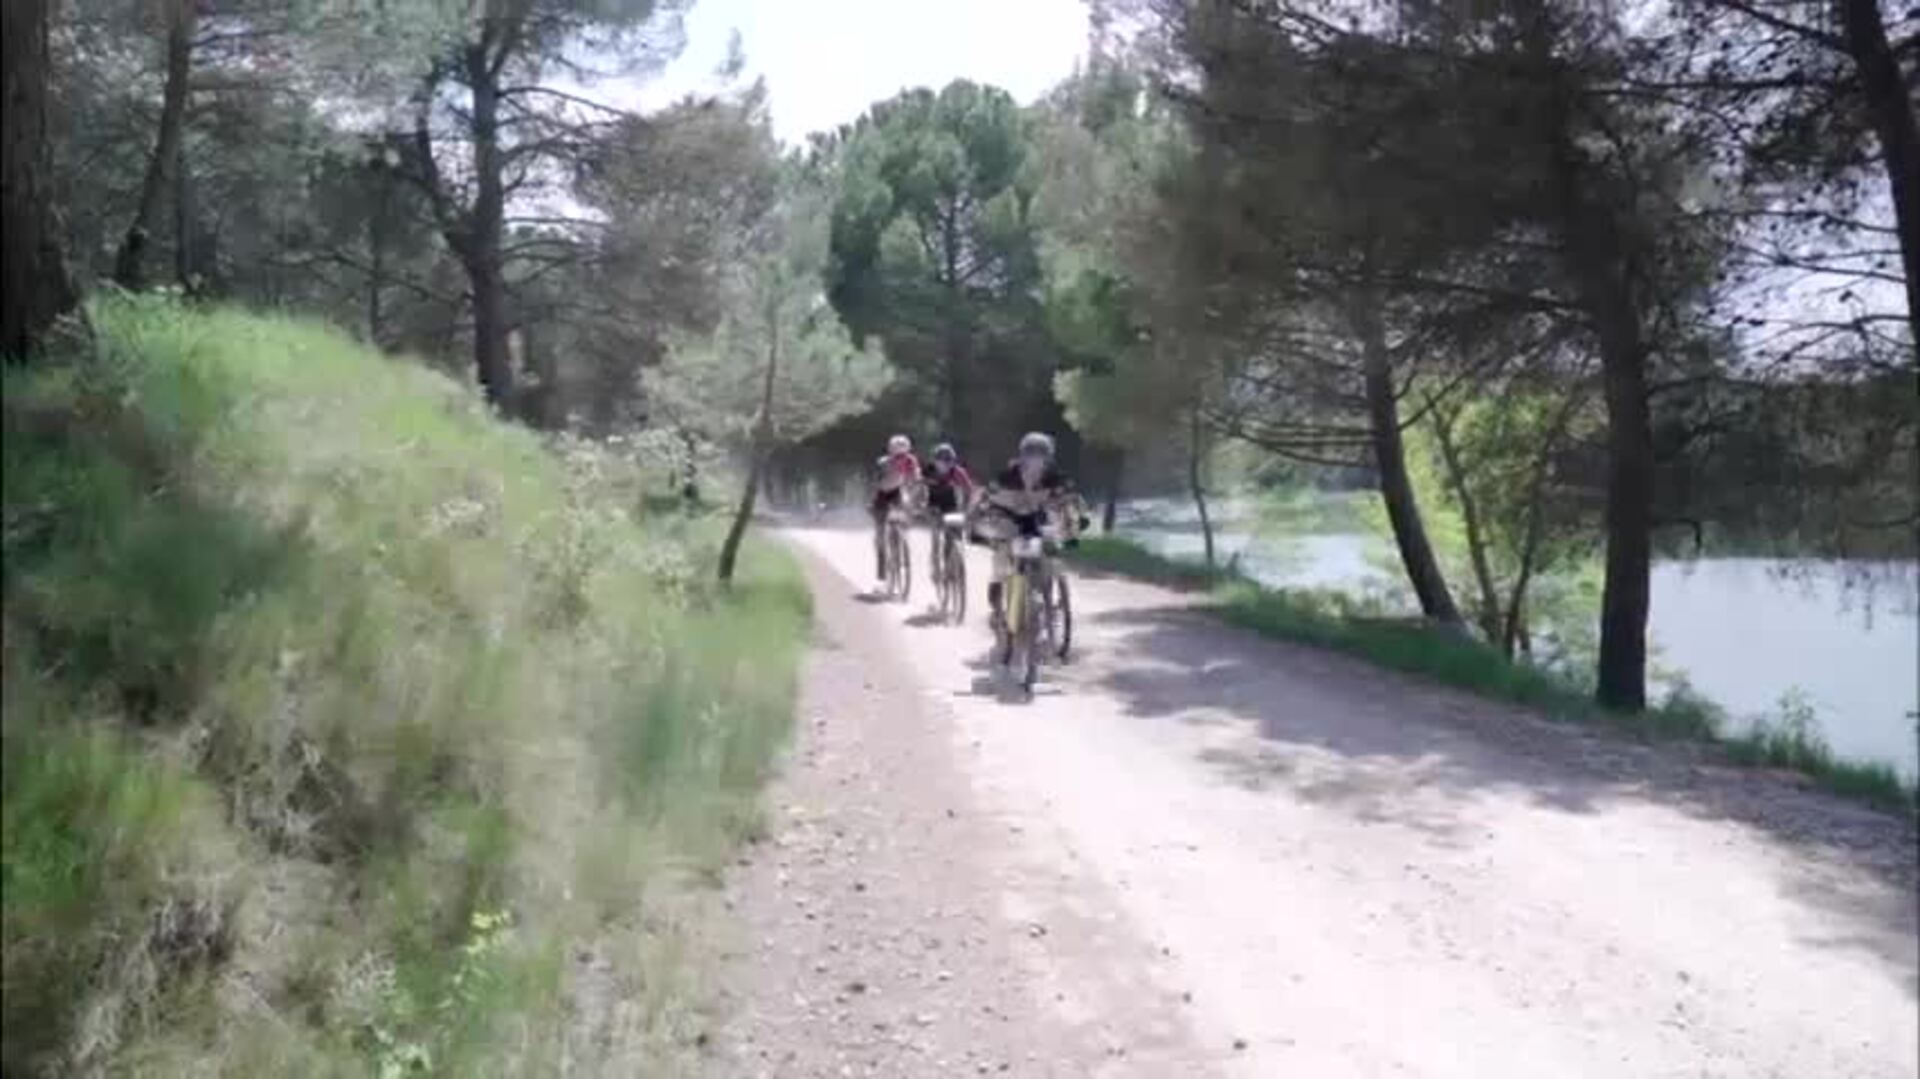 Peeter Pruus se impone en la Dehesa en La Rioja Bike Race